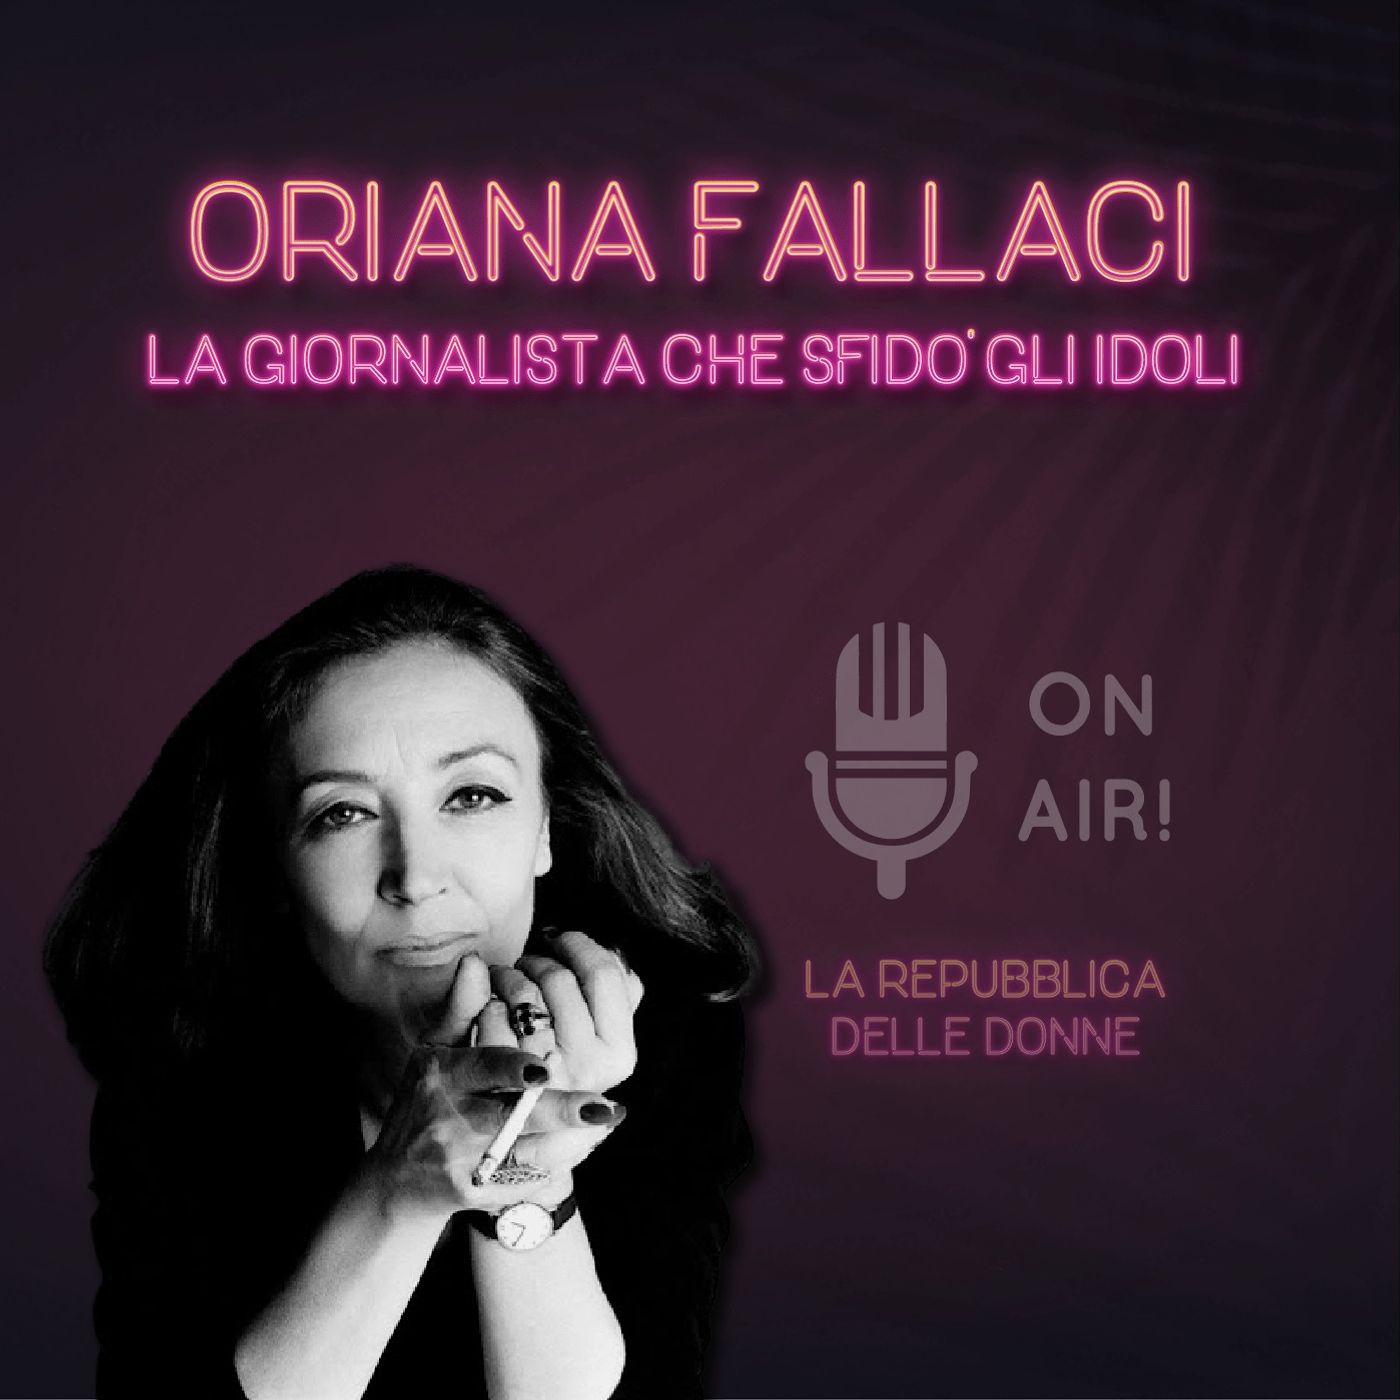 La Repubblica delle donne - 5° Episodio. Oriana Fallaci, la giornalista che sfidò gli idoli. Di Mario Nanni